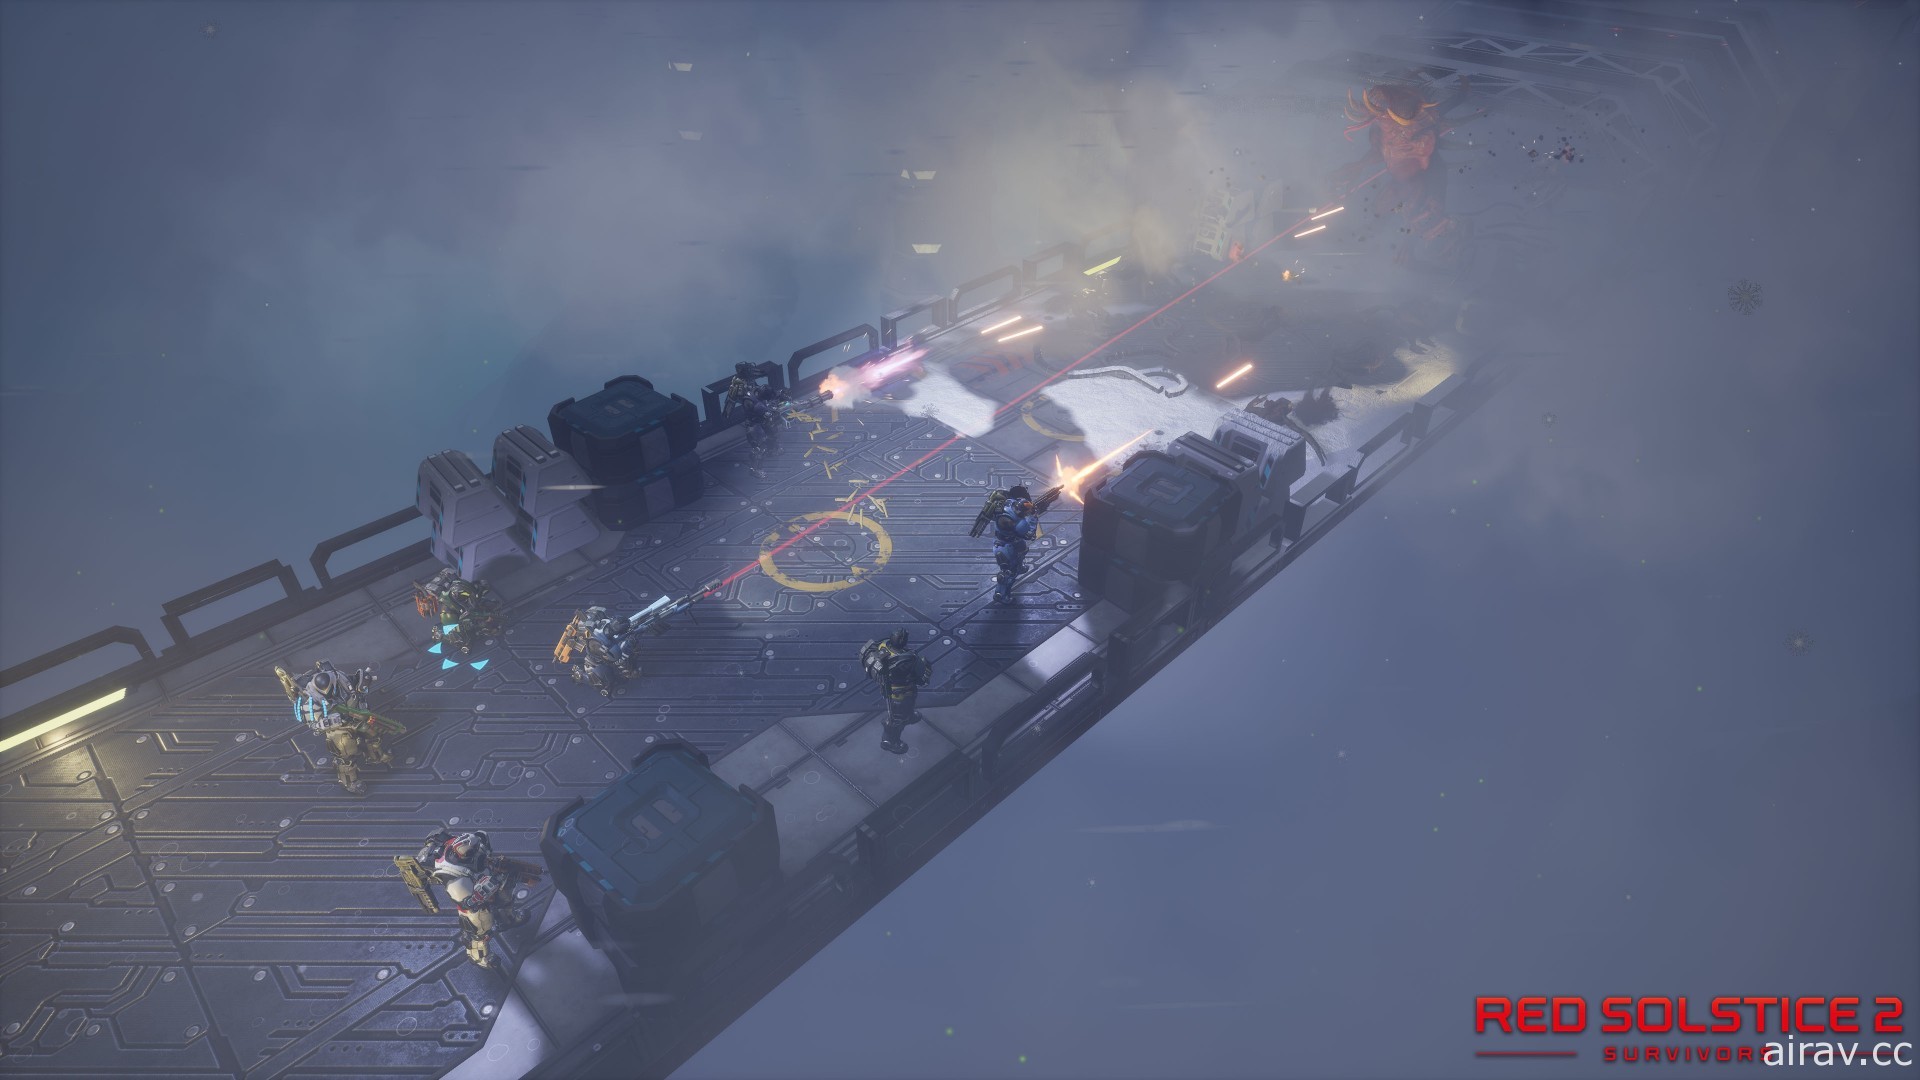 策略战场游戏正统续作《红色至日 2：幸存者》6 月中问世 管治八人小队击退变异怪物